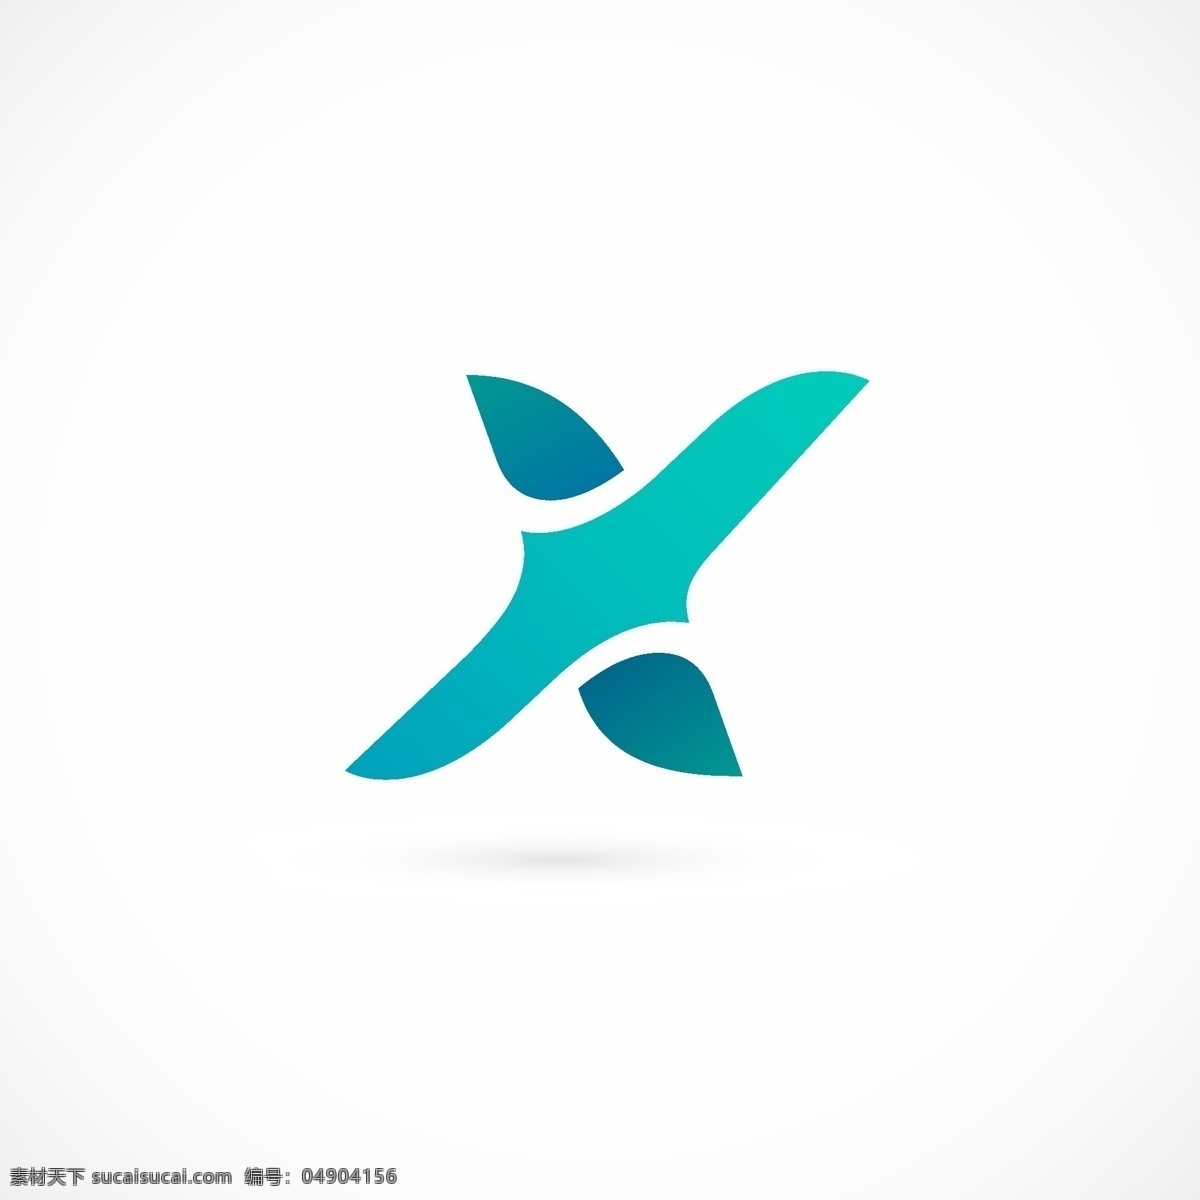 字母 造型 logo 标识 x 互联网 标志 公司 广告 科技logo 领域 多用途 企业标识 企业logo